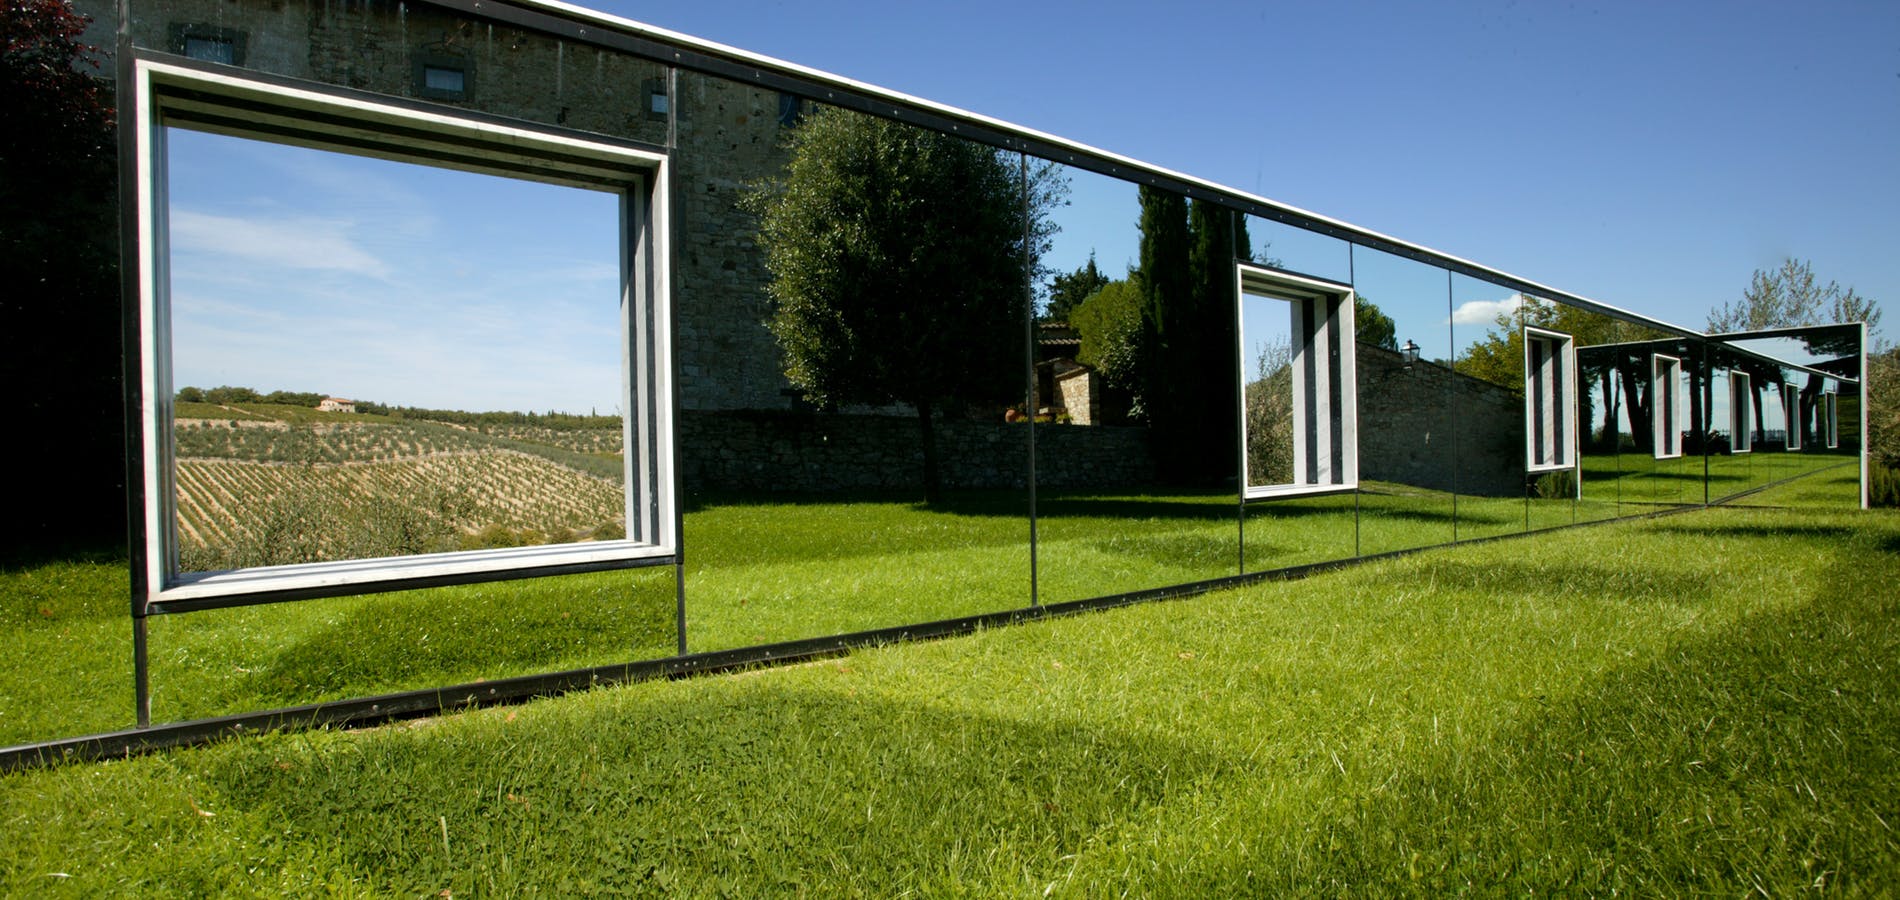 O muro de espelho com as suas janelas (Foto: divulgação/ site Castello)